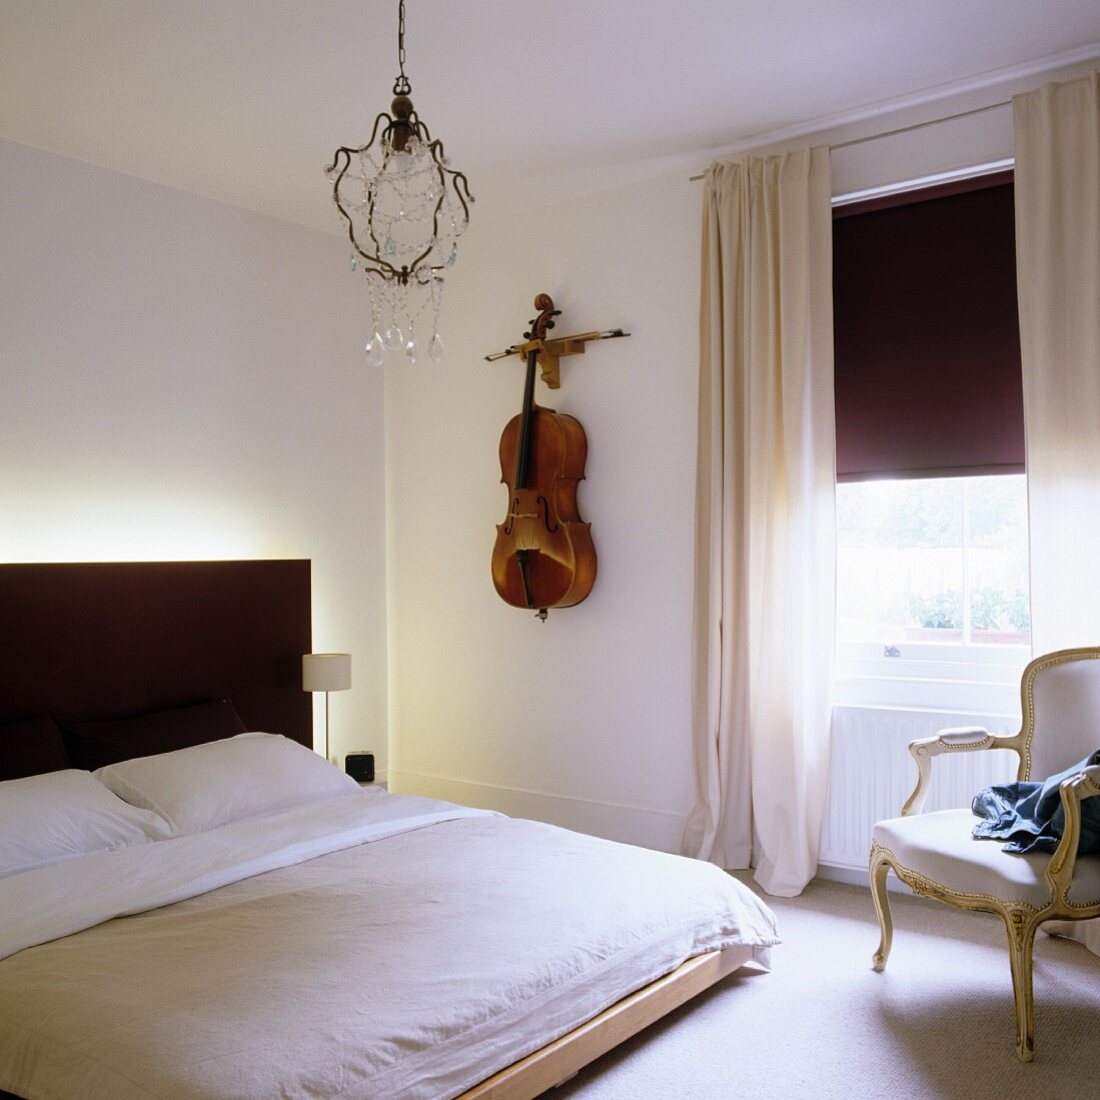 Modernes Bett mit schwarzem, beleuchtetem Kopfteil, Cello als Wanddeko neben Fenster mit halb geschlossenem Rollo